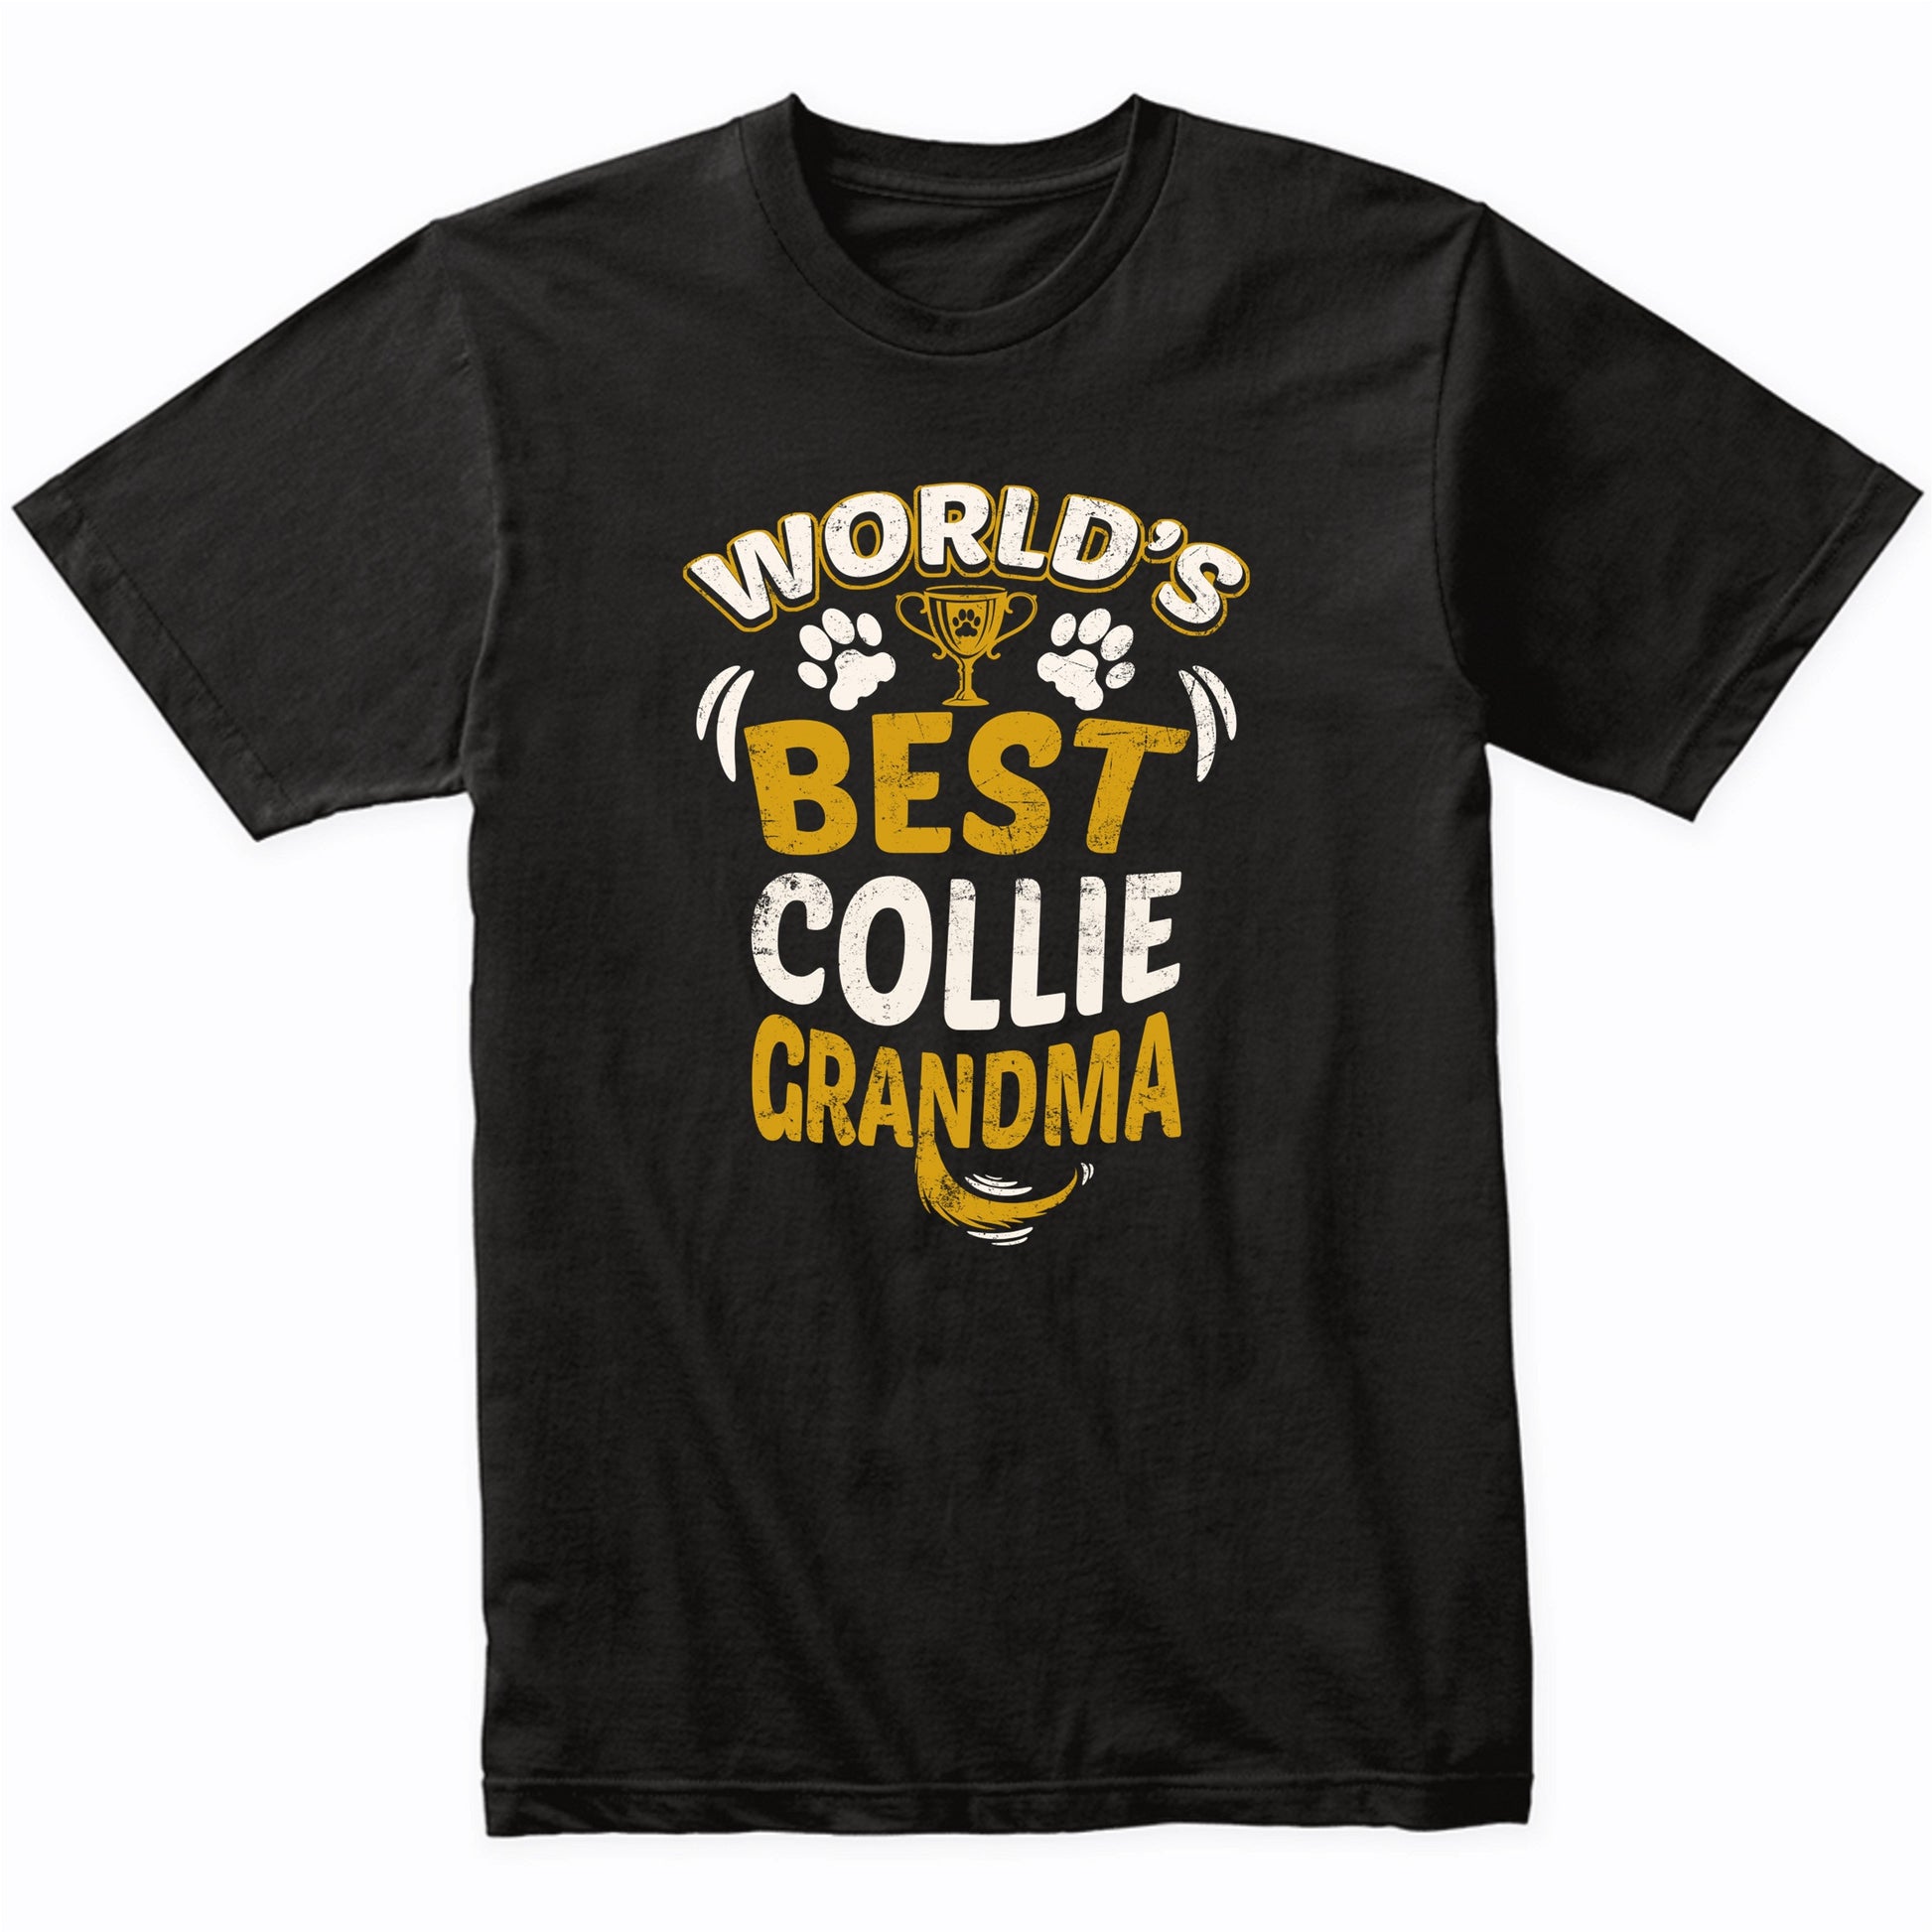 World's Best Collie Grandma Graphic T-Shirt